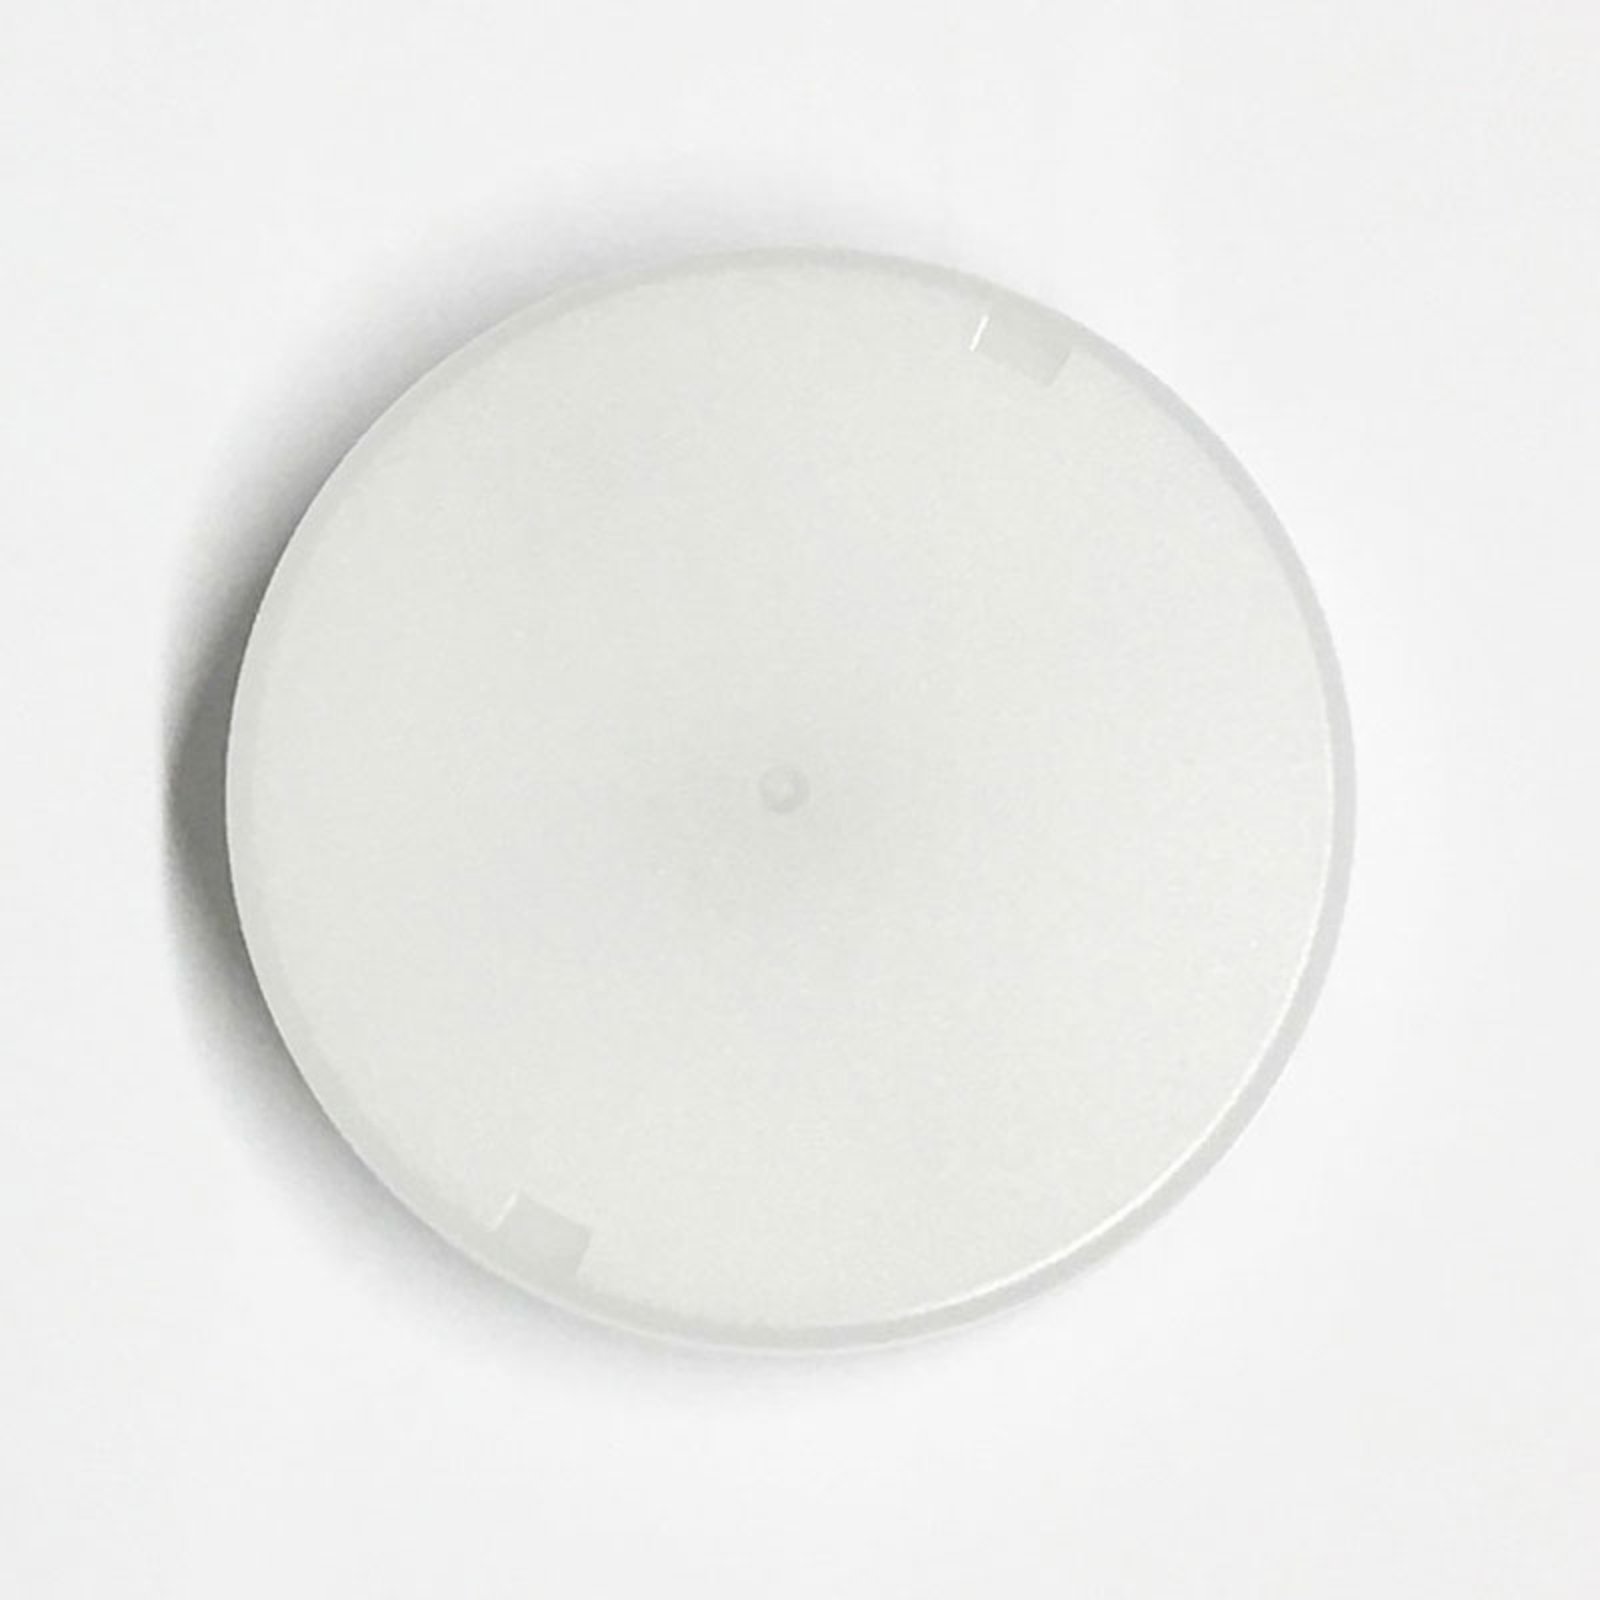 LED nástěnné světlo Circle, bílá, 1 zdroj stmívač